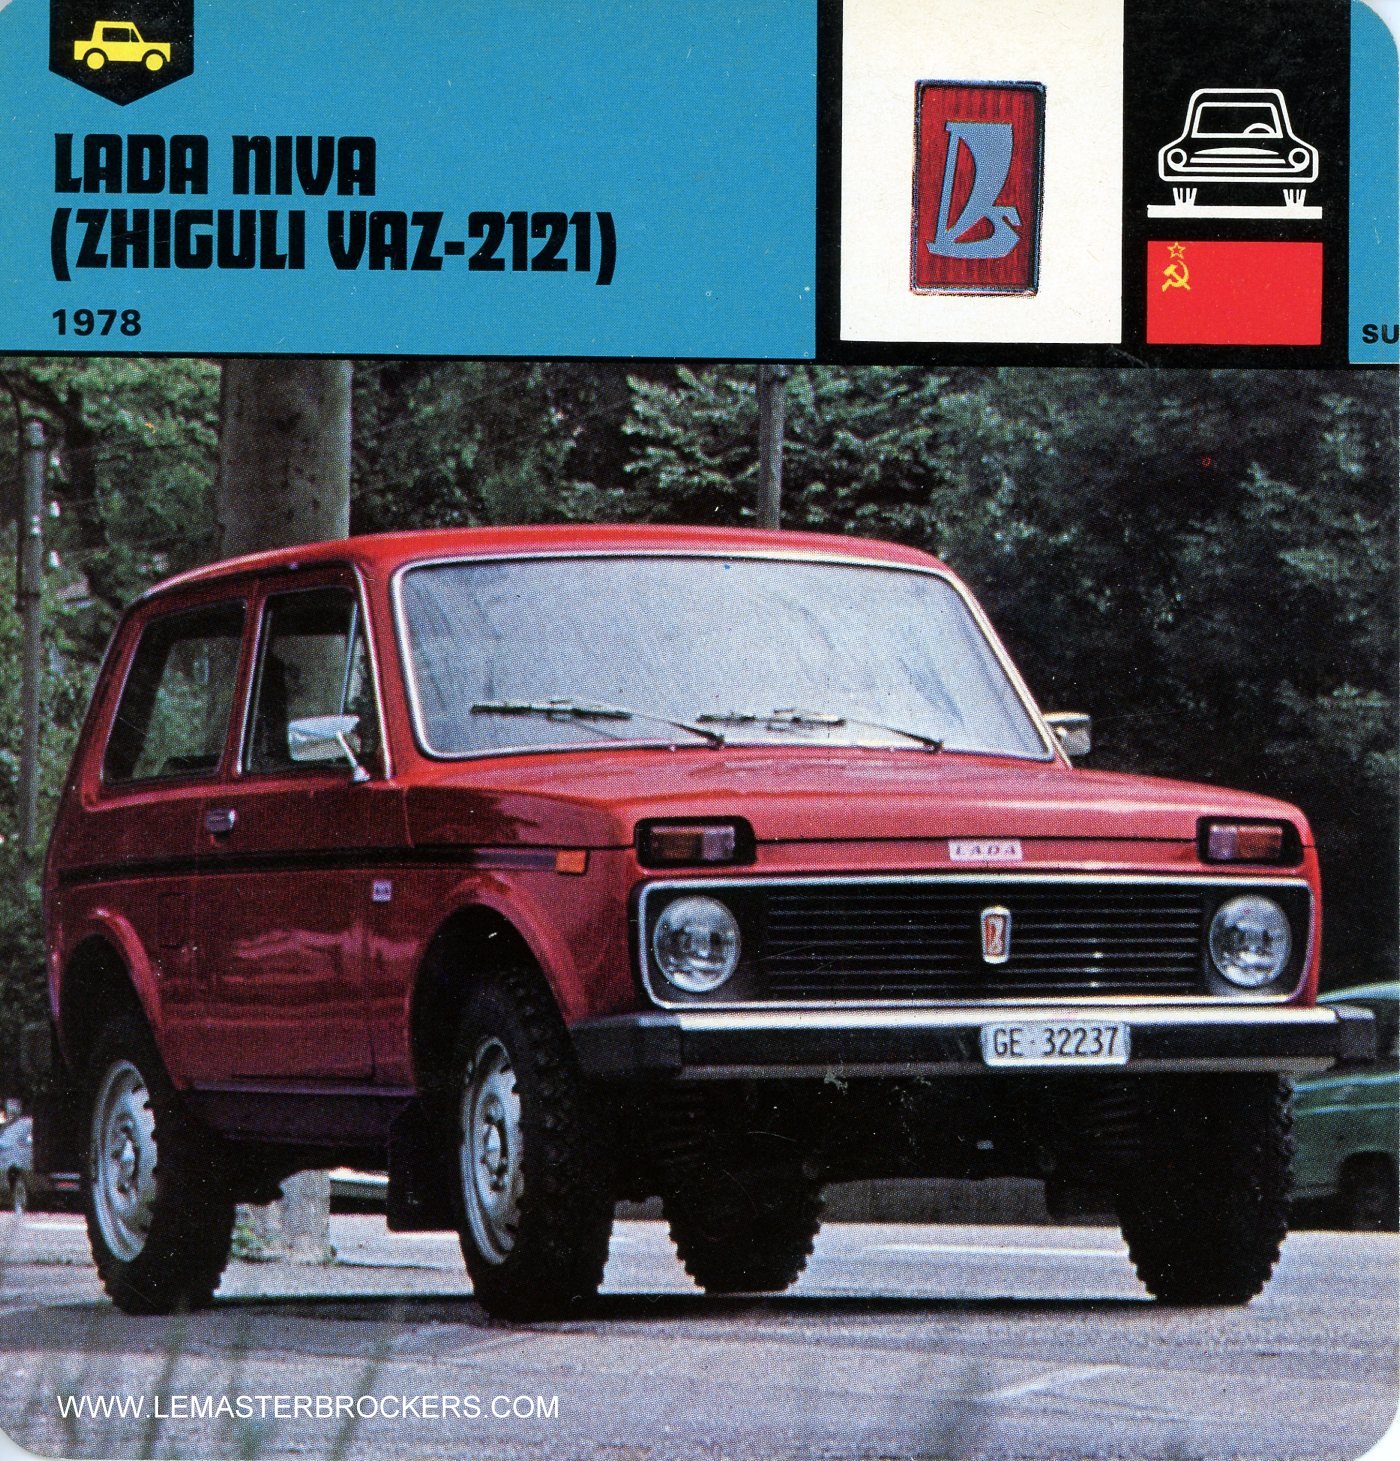 FICHE AUTO LADA NIVA ZHIGULI VAZ-2121 1978